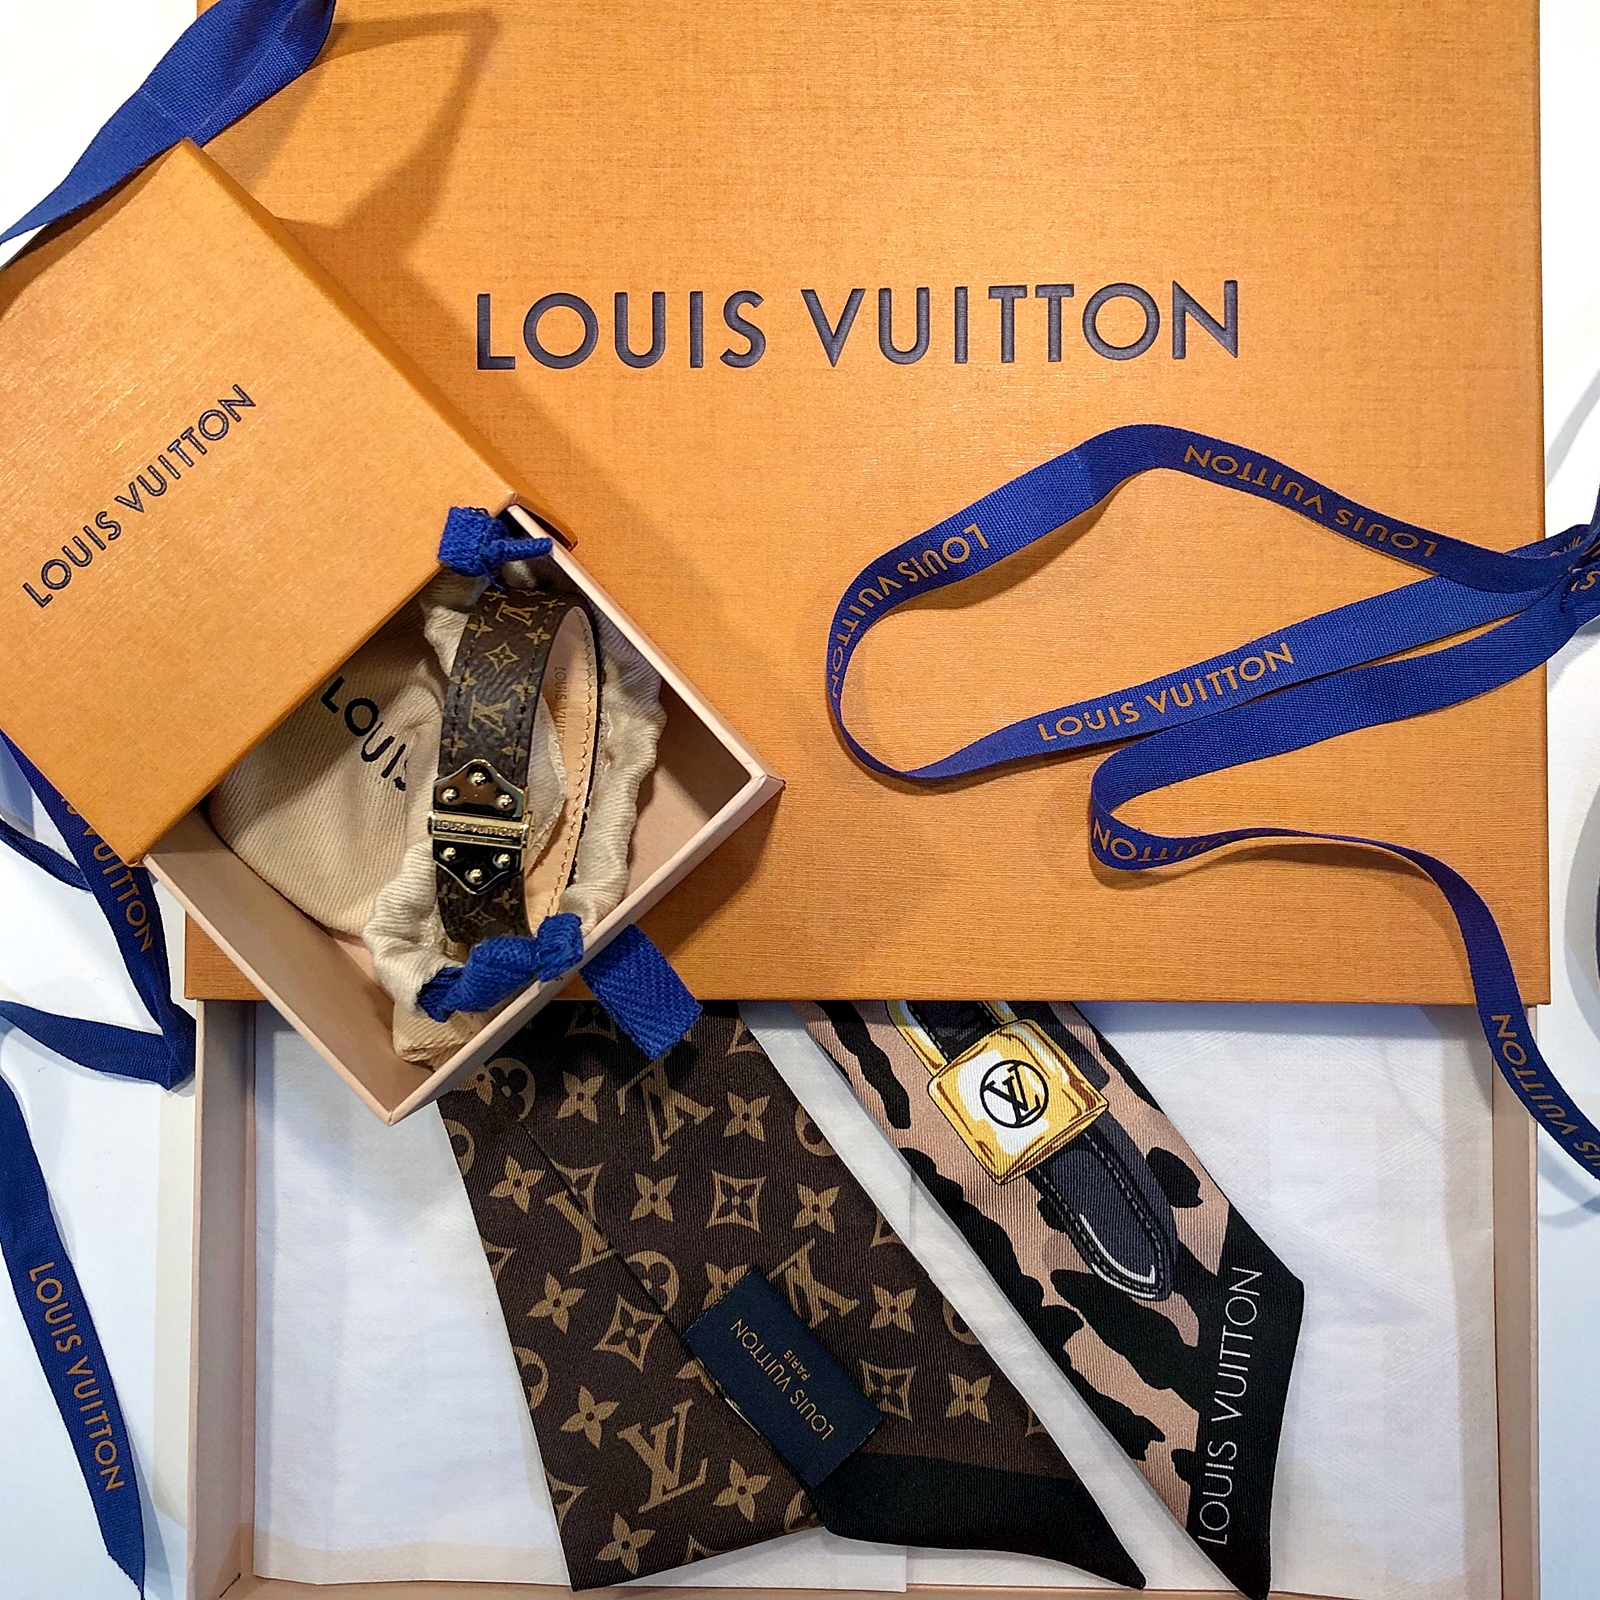 Louis Vuitton och en ny resa till Berlin är inbokad